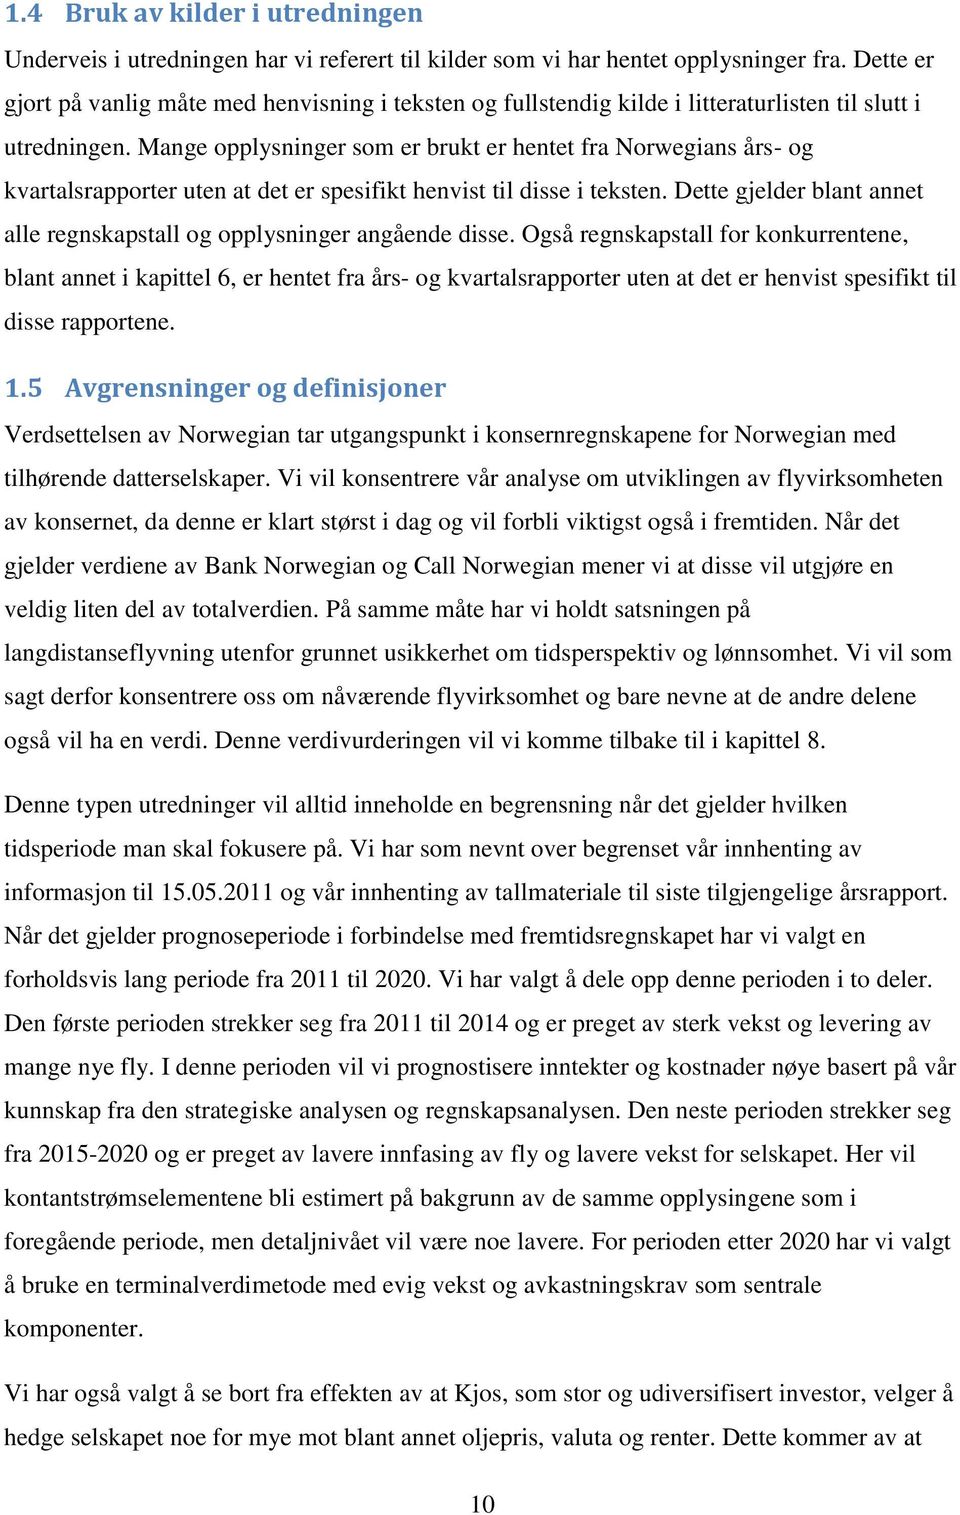 Mange opplysninger som er brukt er hentet fra Norwegians års- og kvartalsrapporter uten at det er spesifikt henvist til disse i teksten.